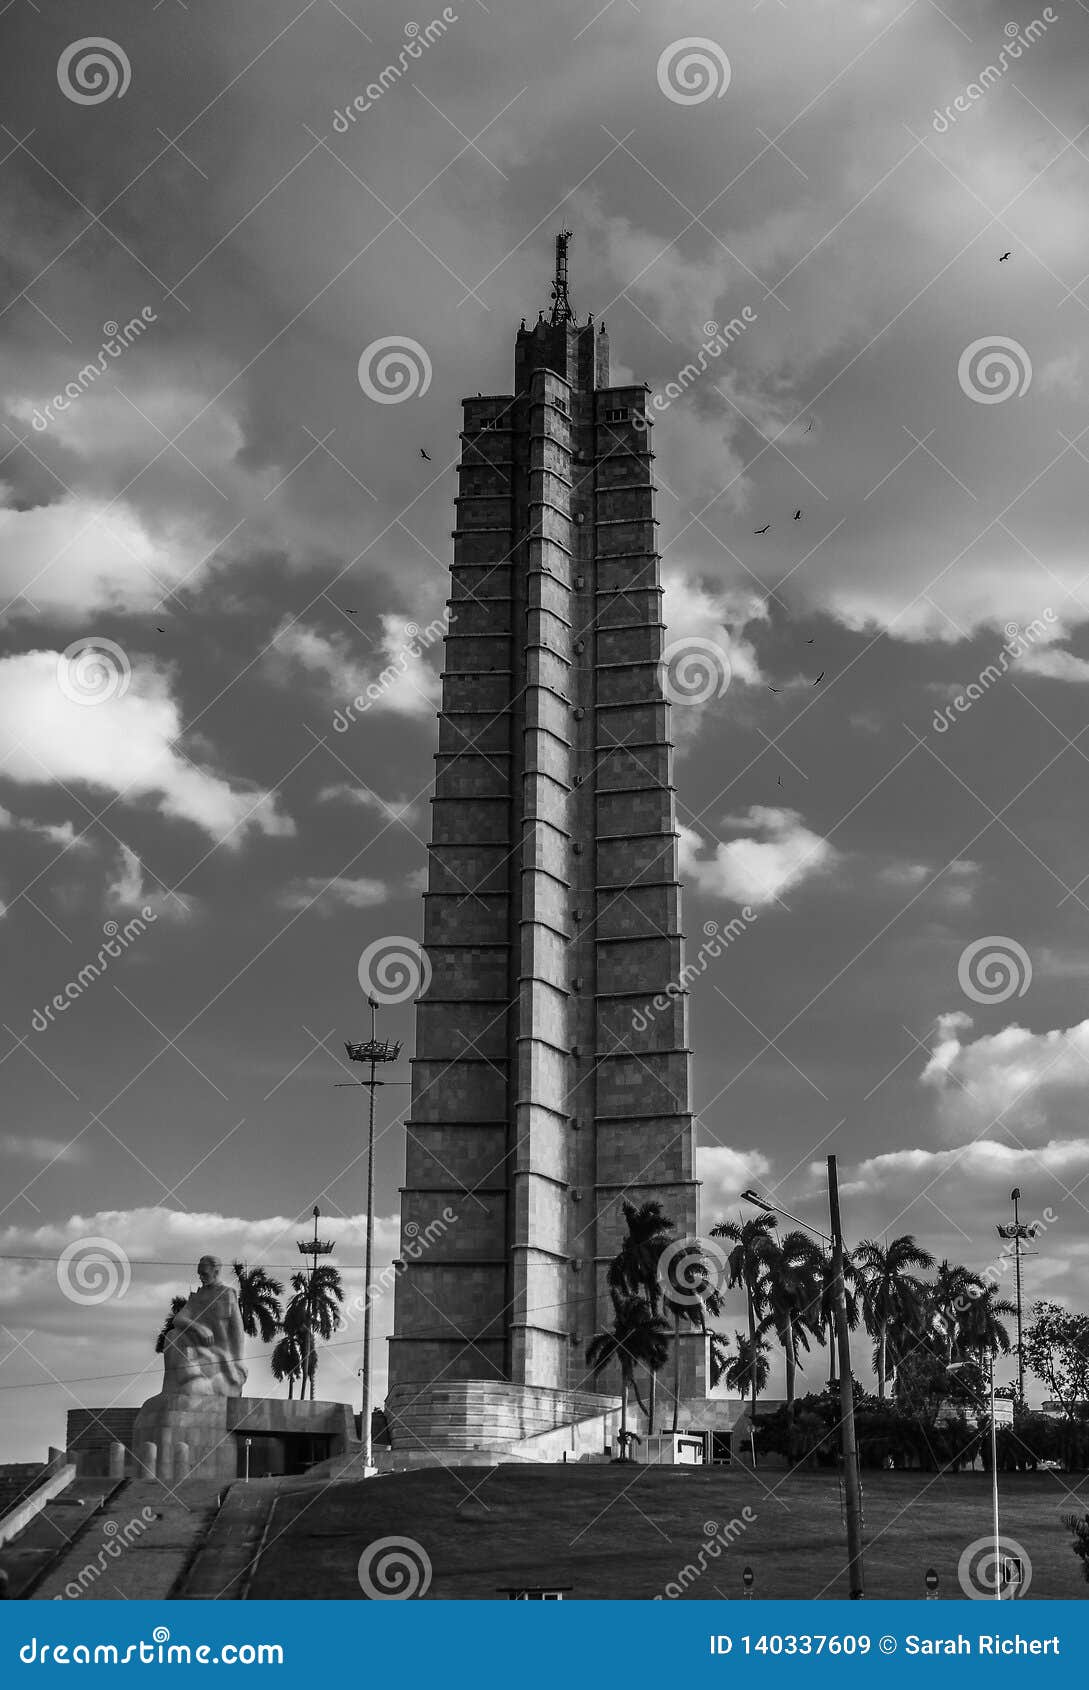 tower at the plaza de la revolucion